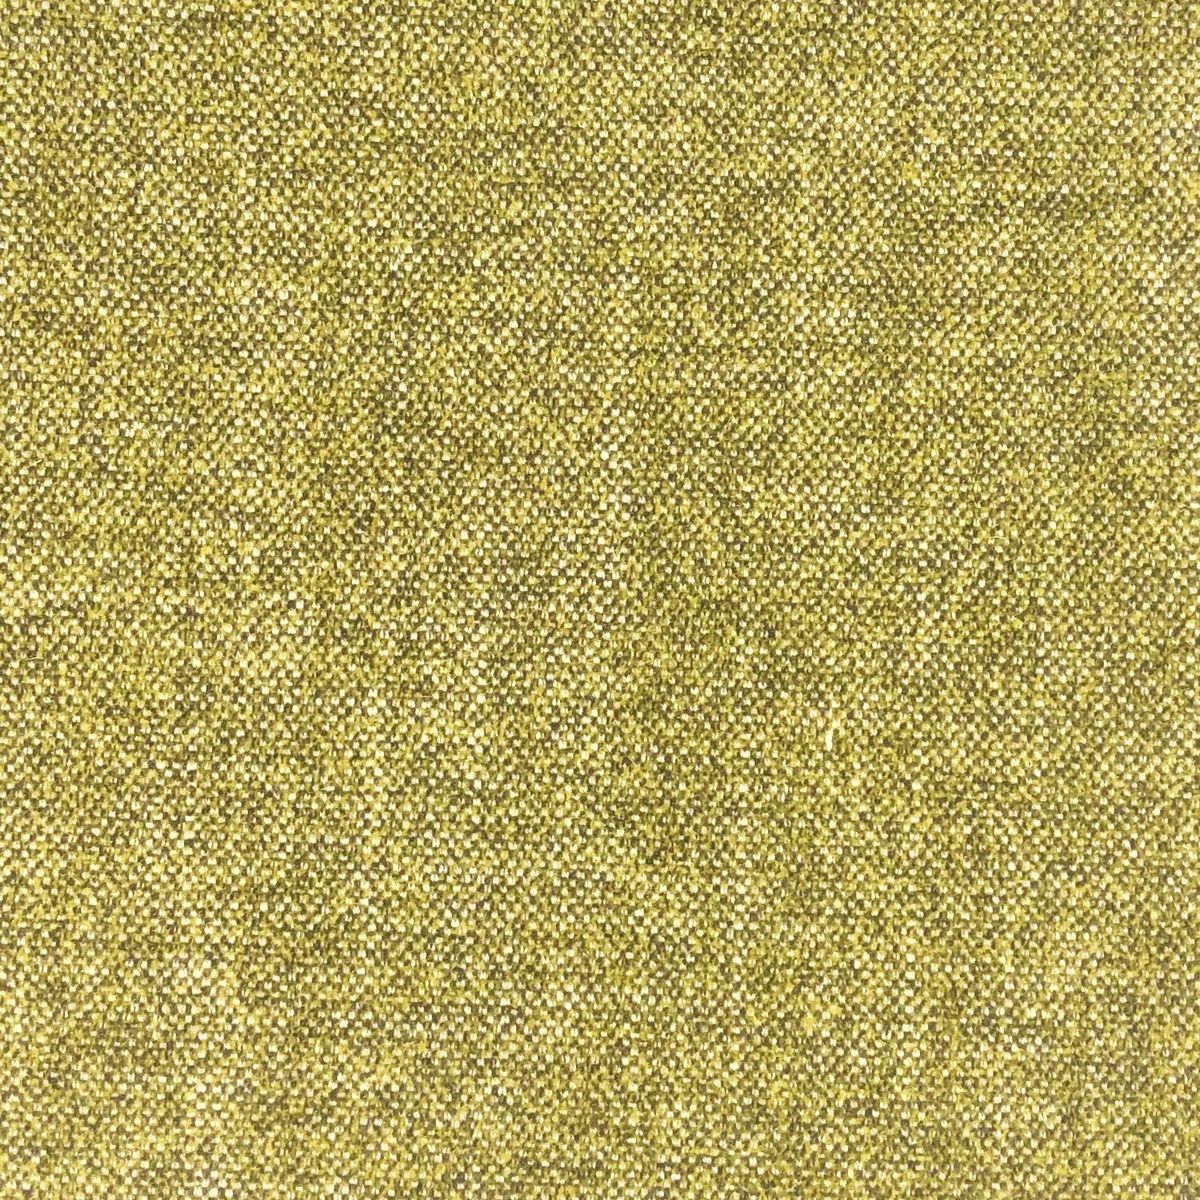 Merino Mustard Fabric by Chatham Glyn